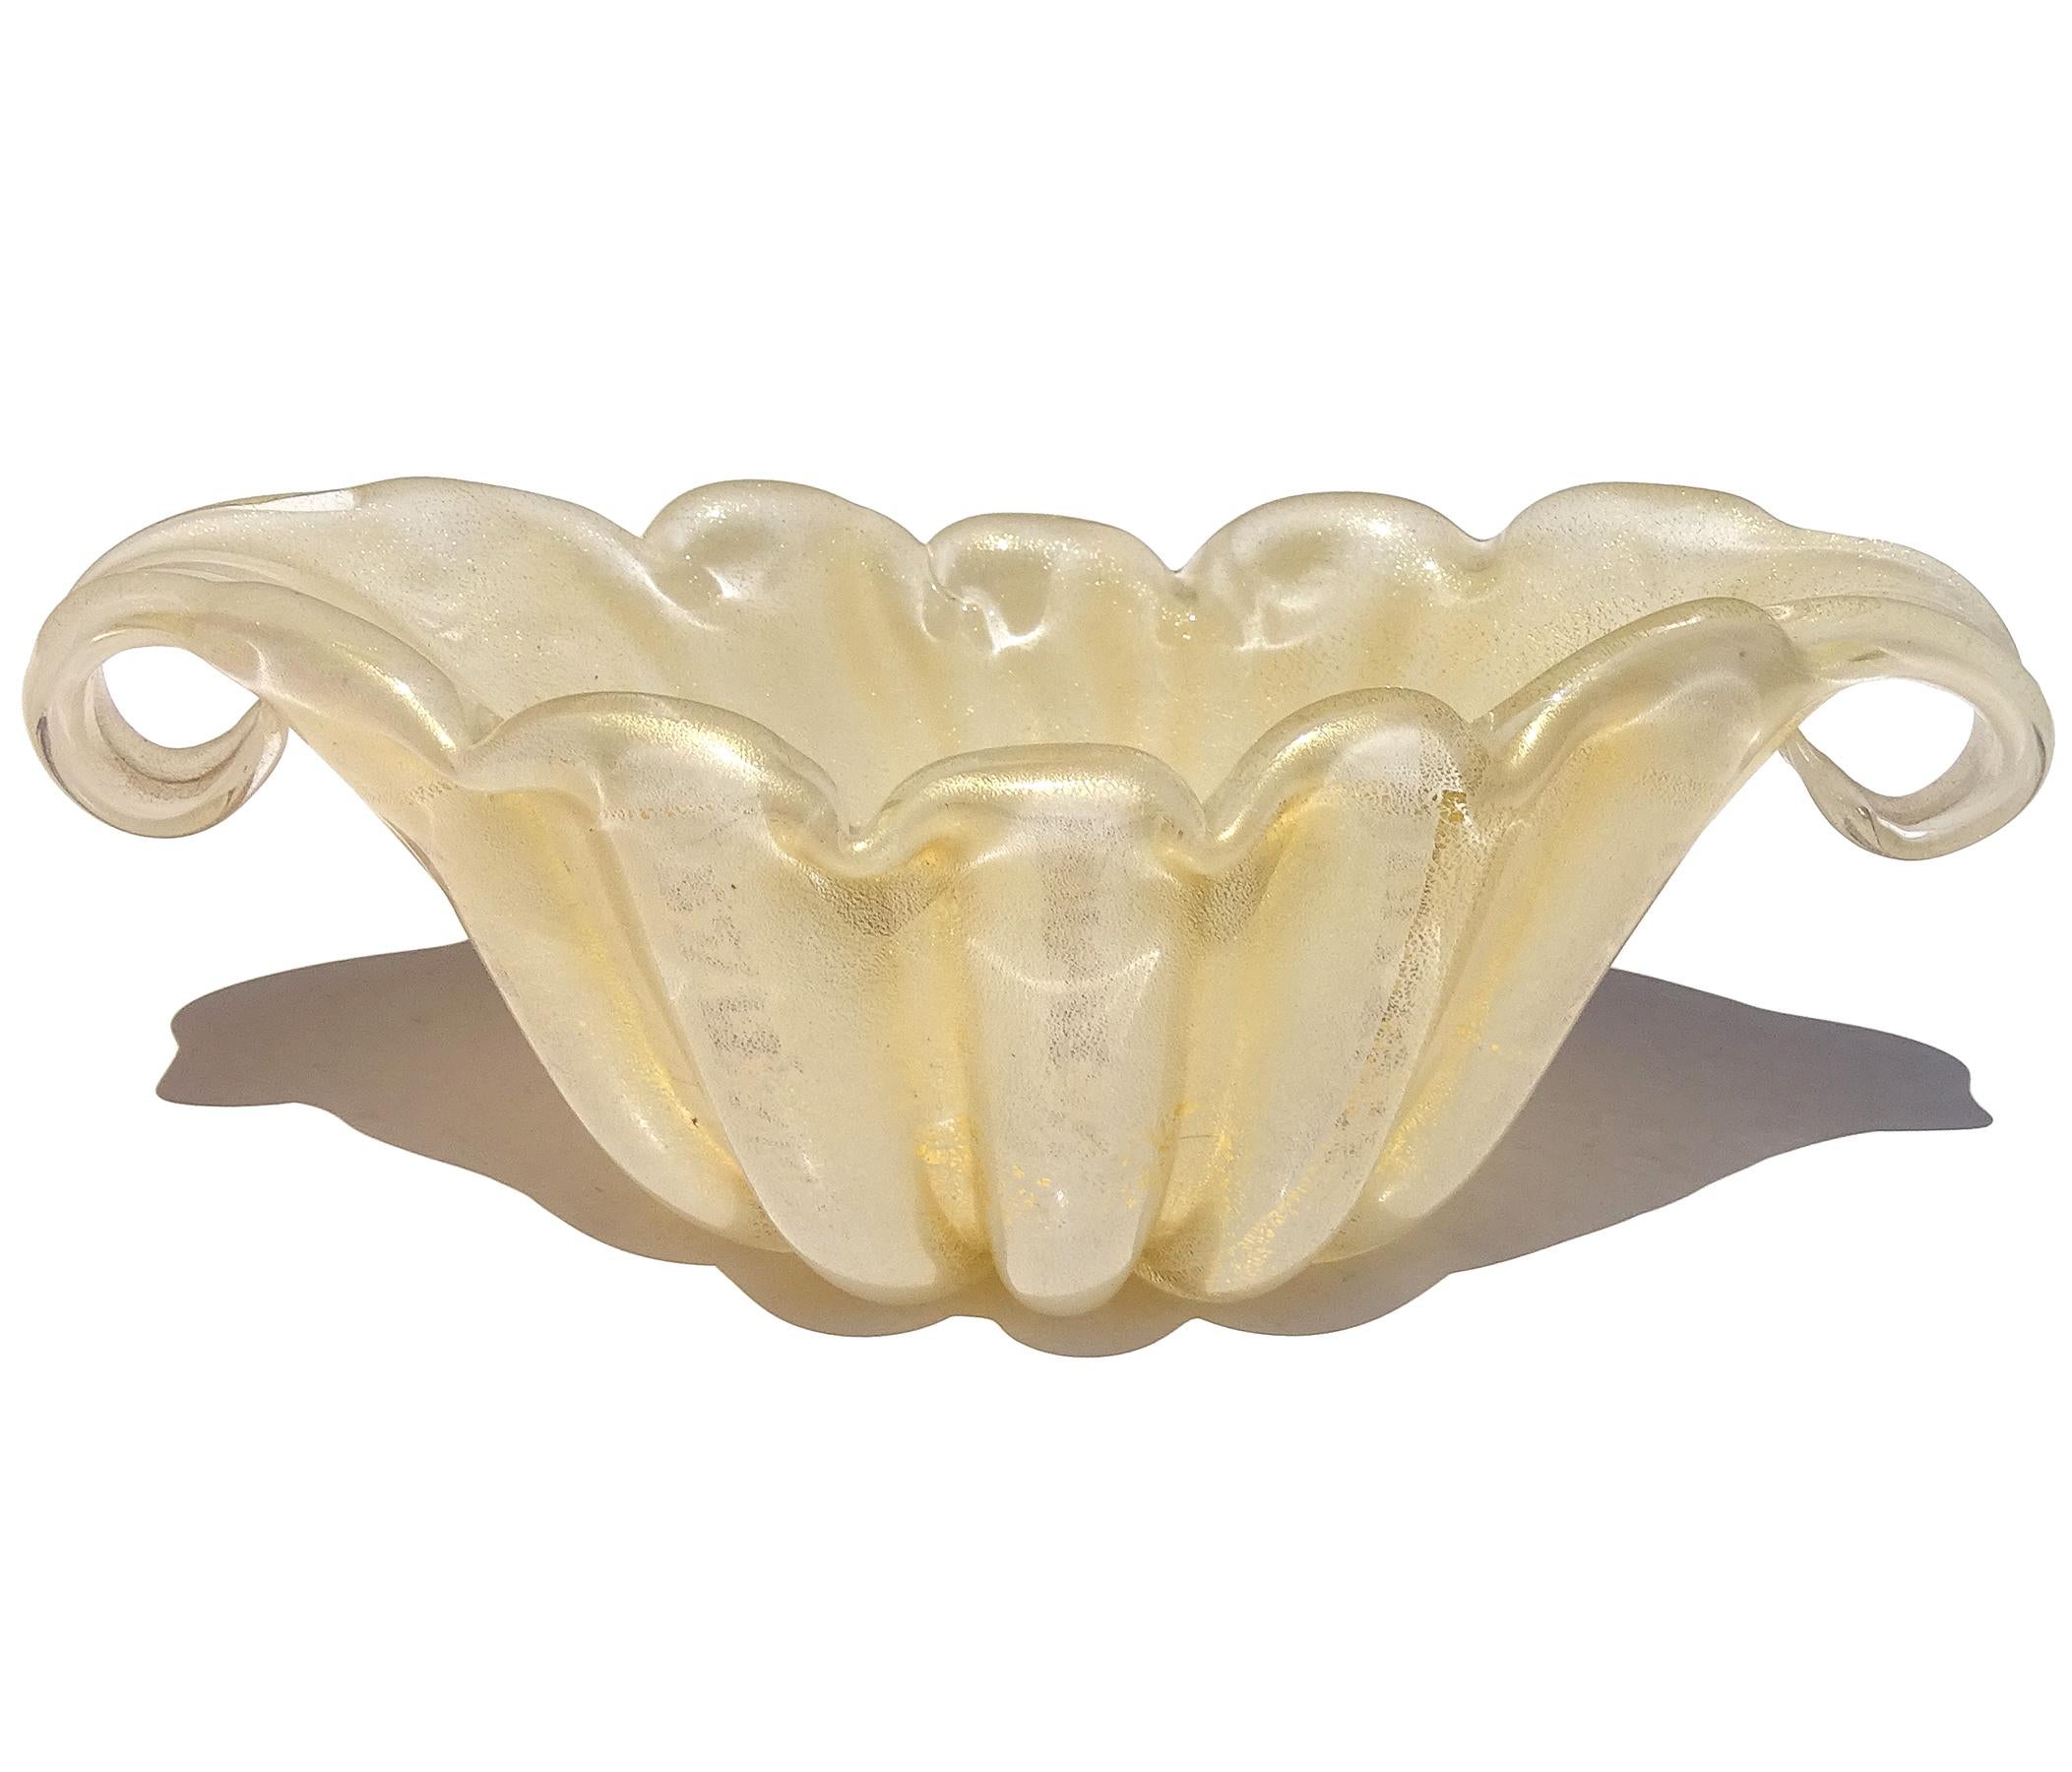 Schöne Vintage Murano mundgeblasenen weißen und goldenen Flecken italienischen Kunstglas Jakobsmuschel und ausgestelltem Rand dekorative Schale. Dokumentiert für den Designer Ercole Barovier, für die Firma Barovier e Toso. Sie ist aus opalweißem